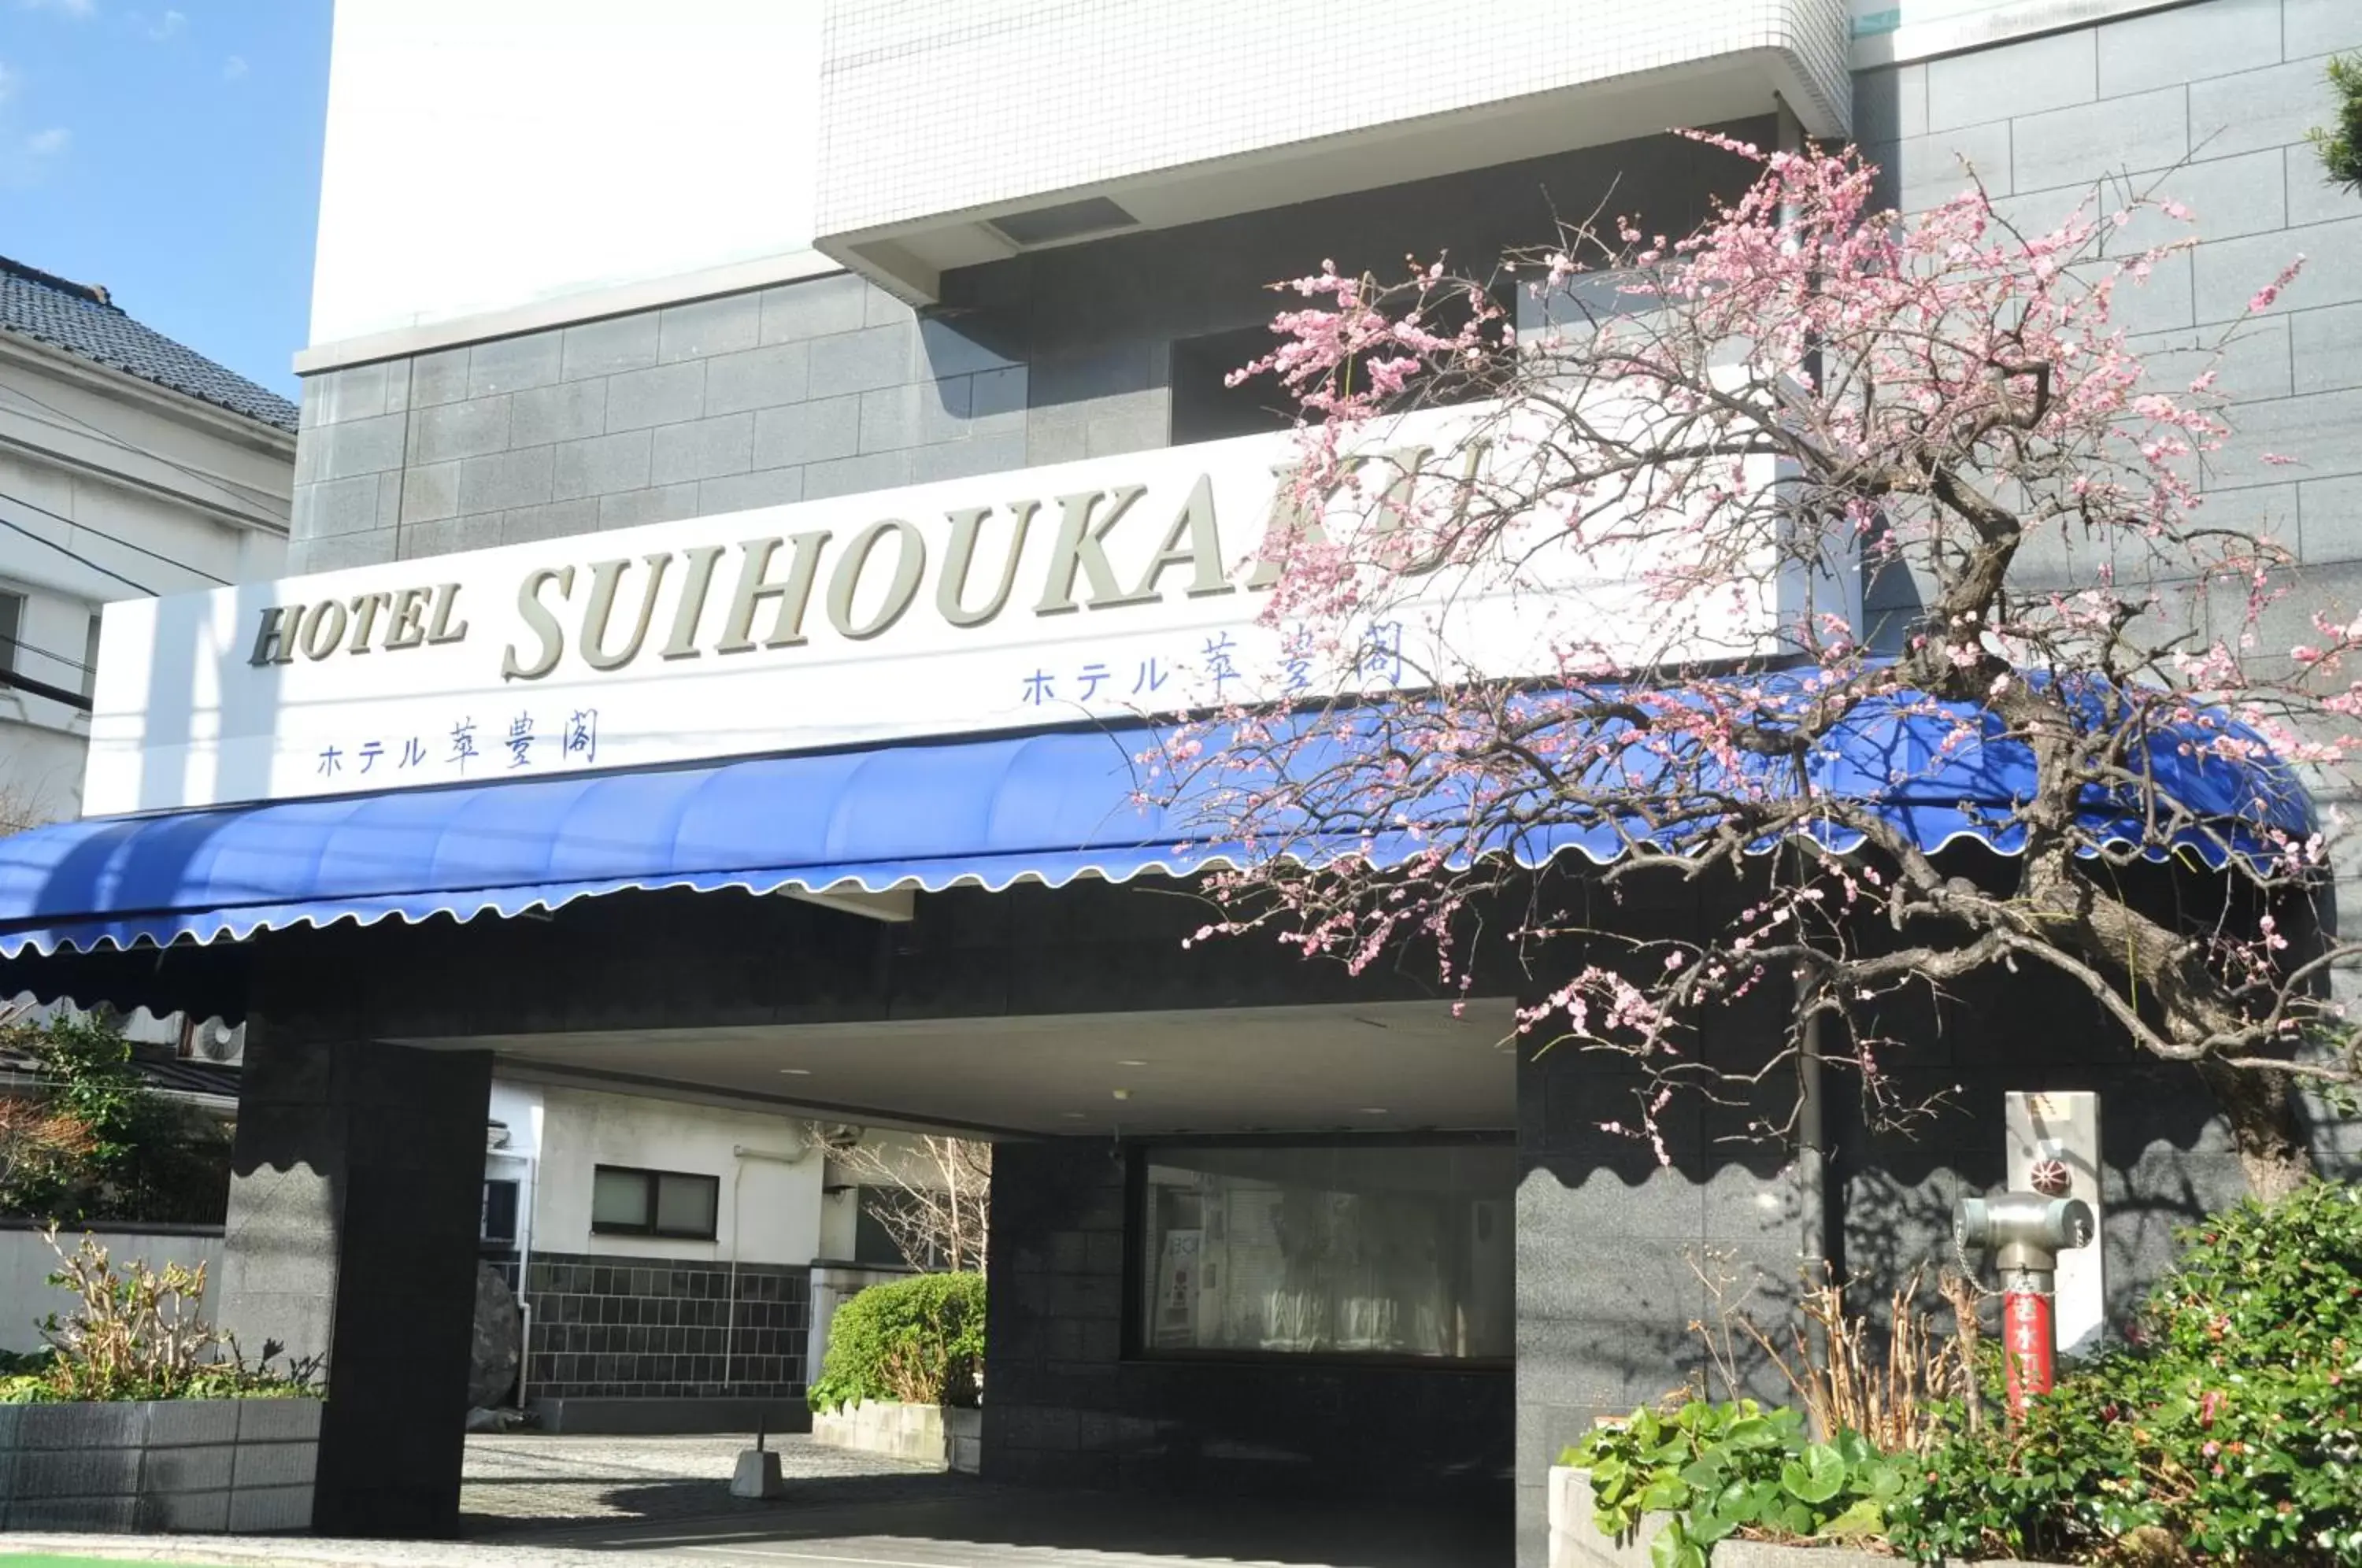 Facade/entrance in Suihoukaku Hotel